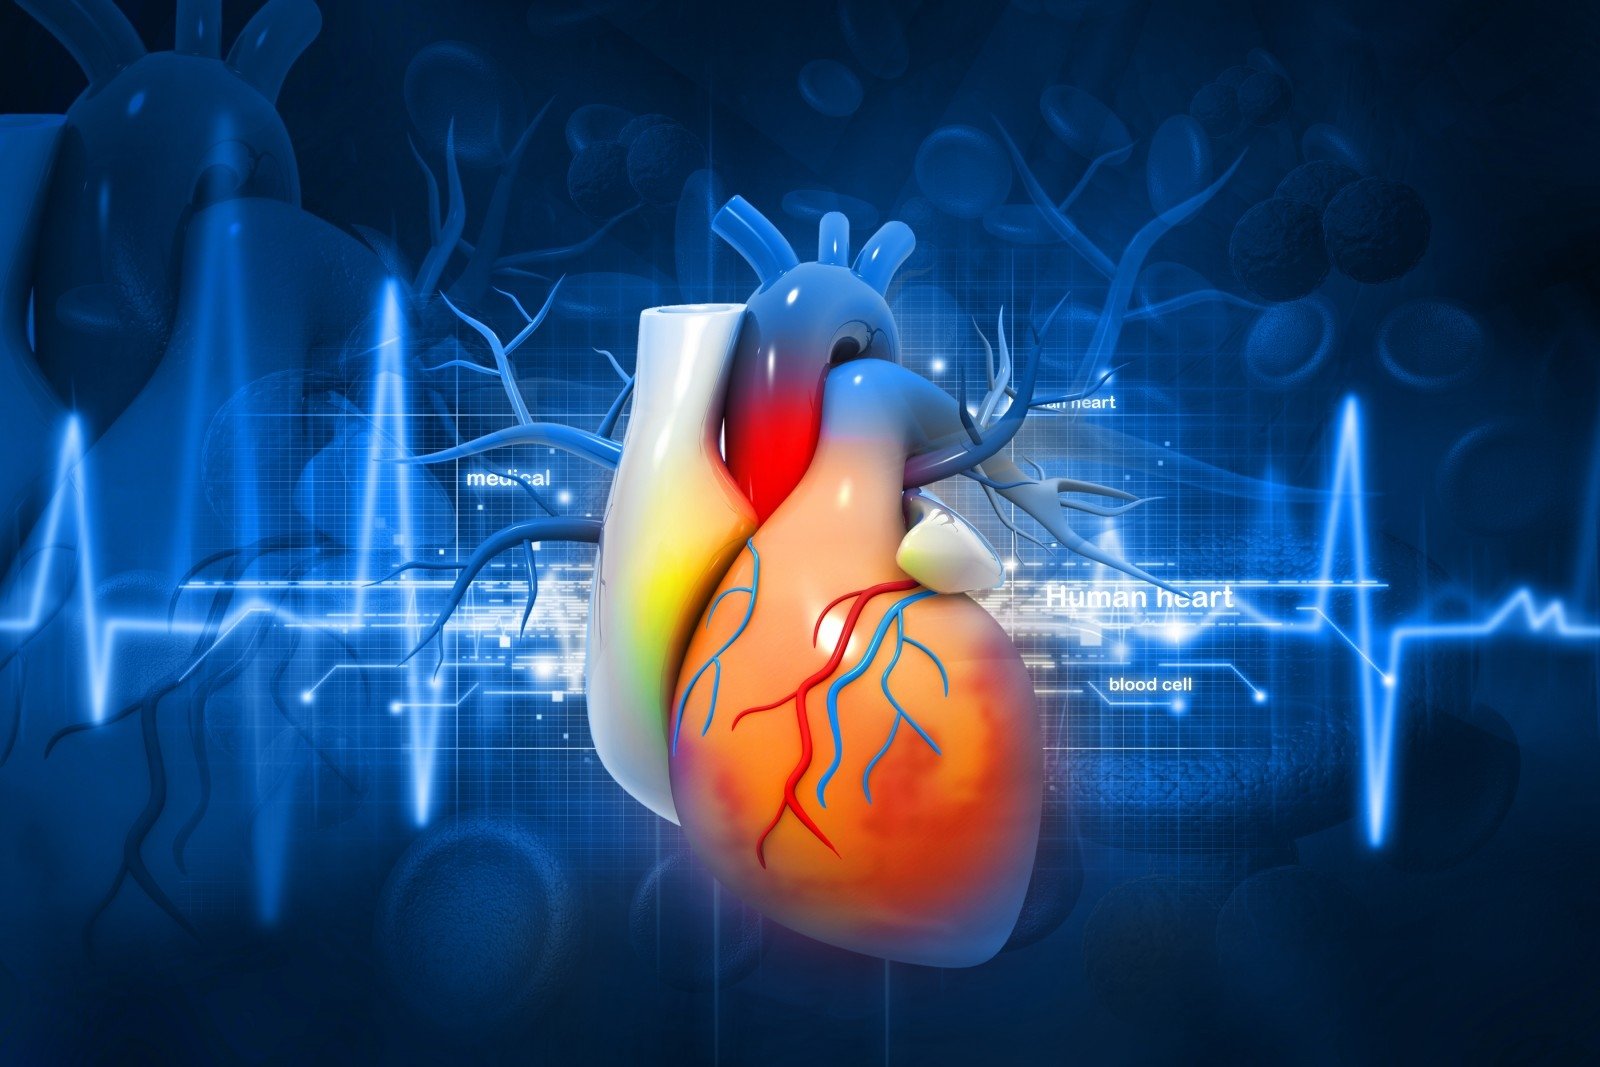 kaip aš įveikiau hipertenziją hipertenzijos poveikis organams